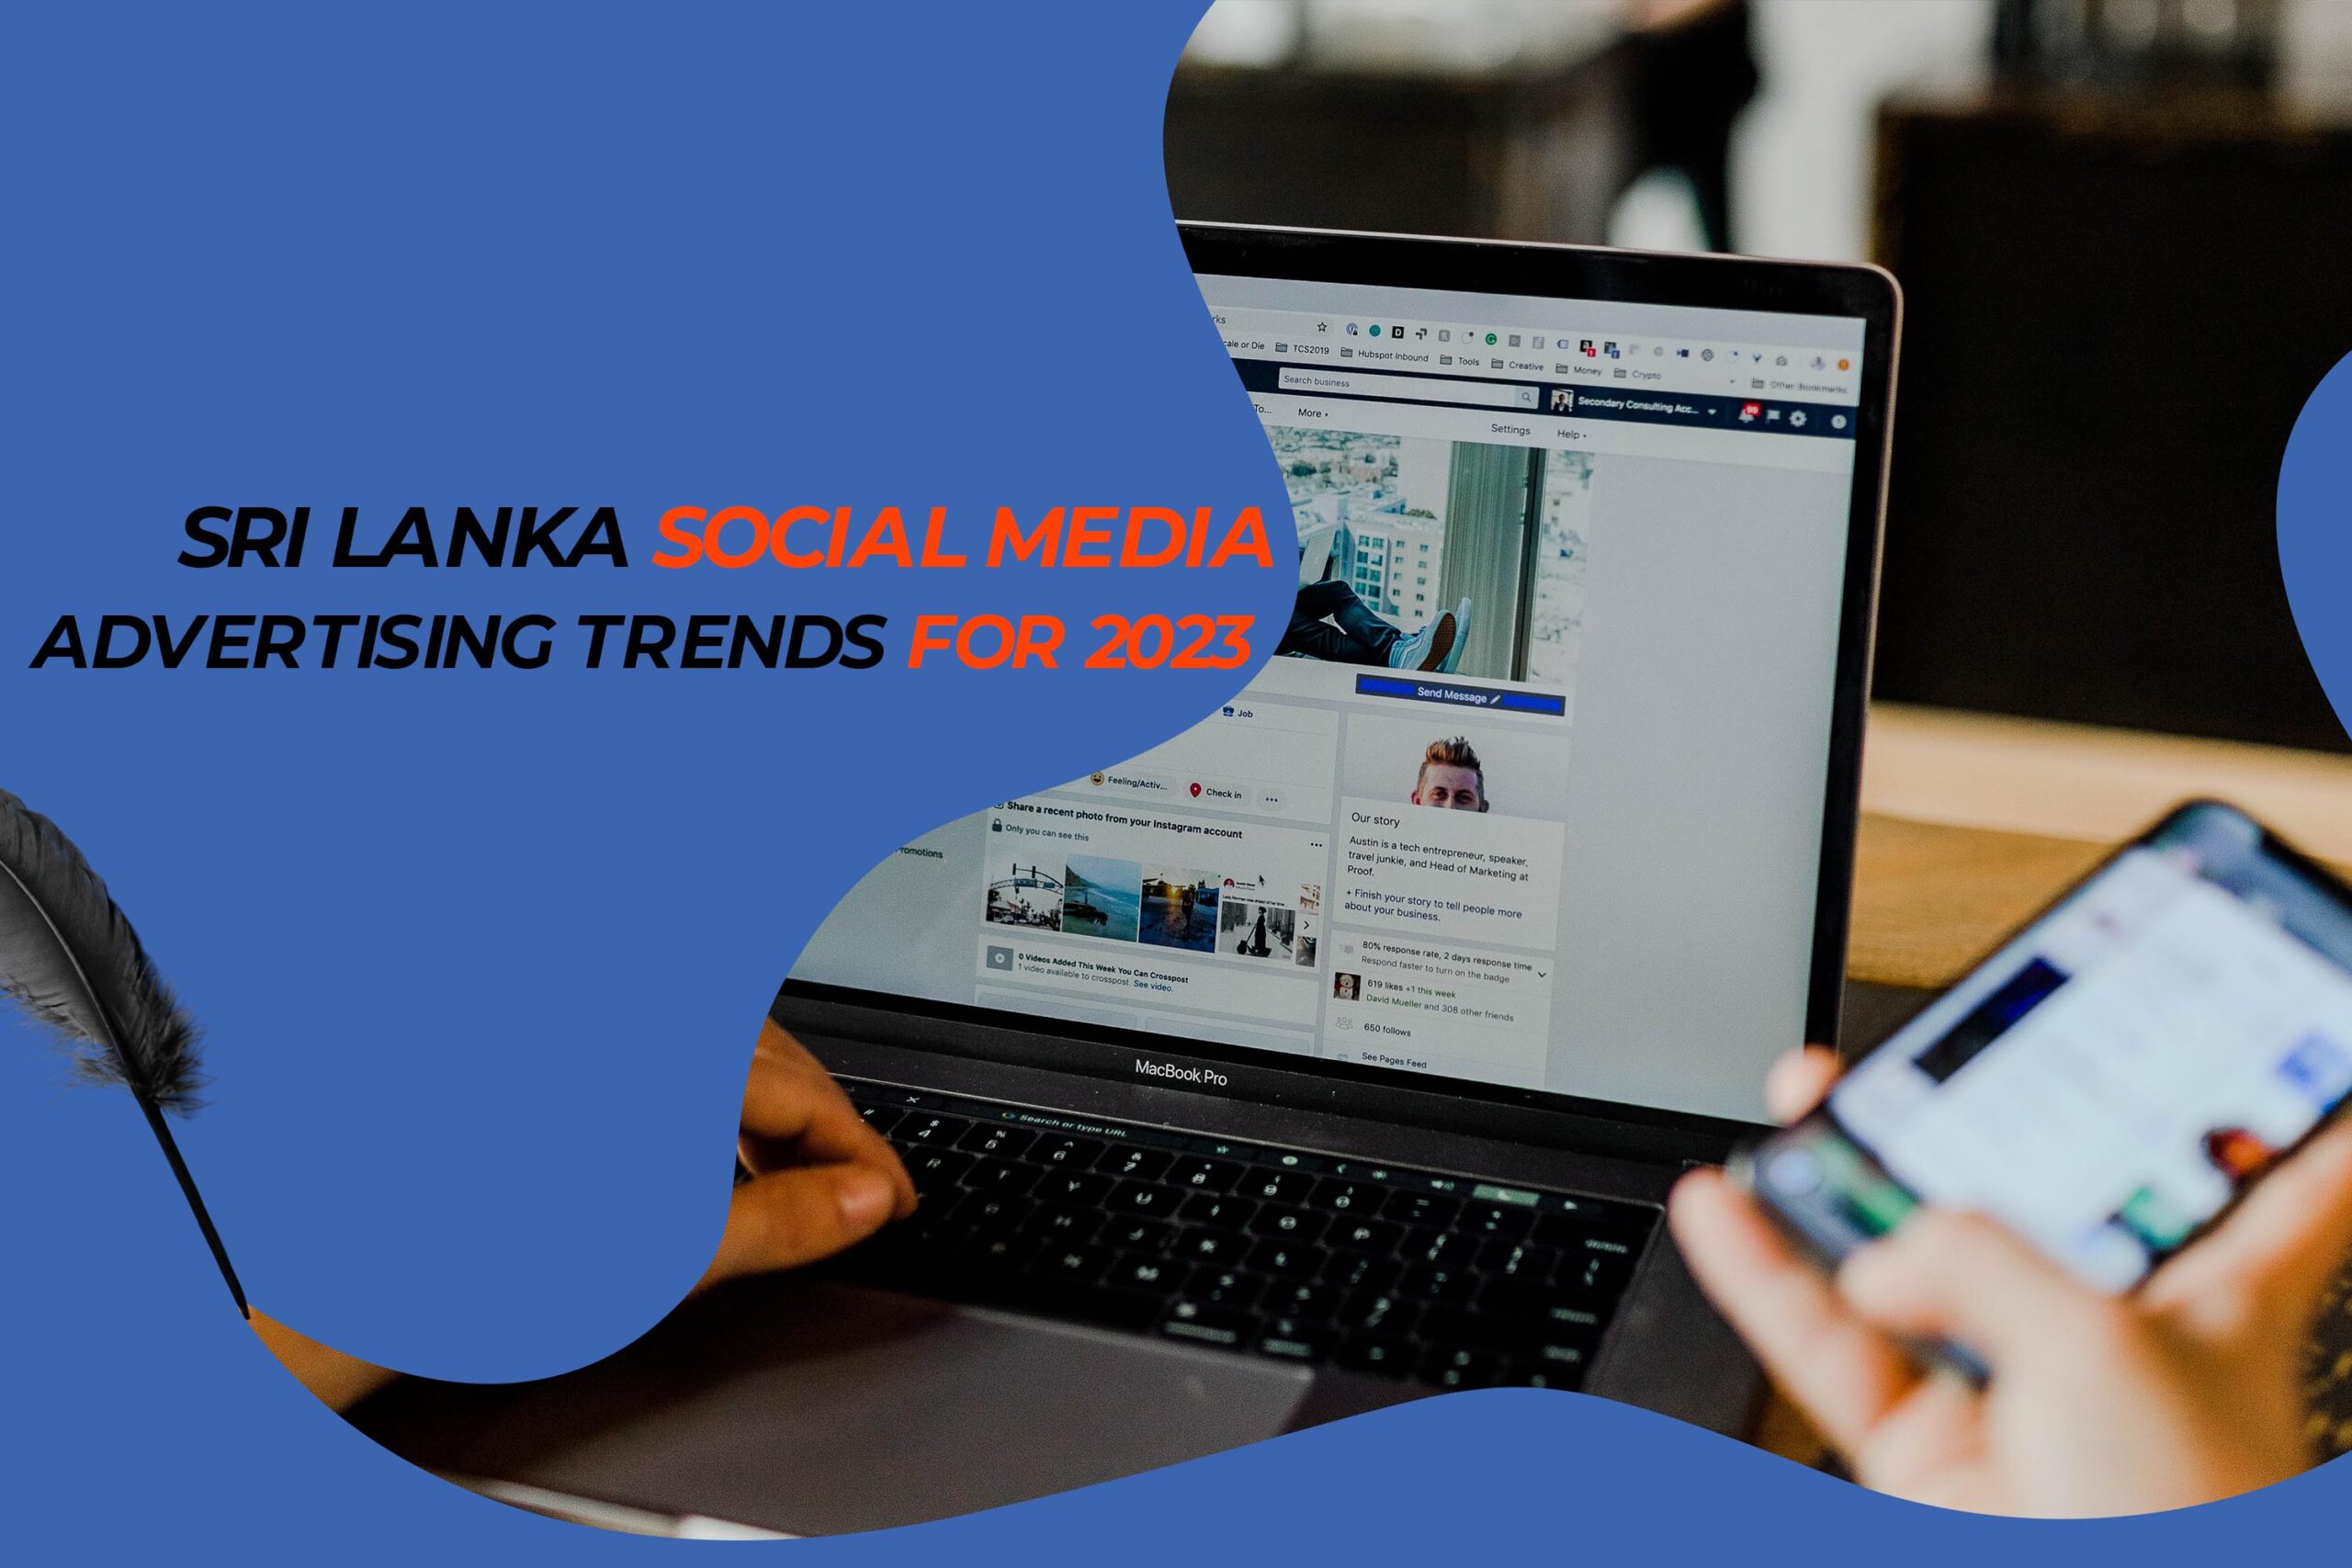 Sri Lanka Social Media Advertising Trends for 2023